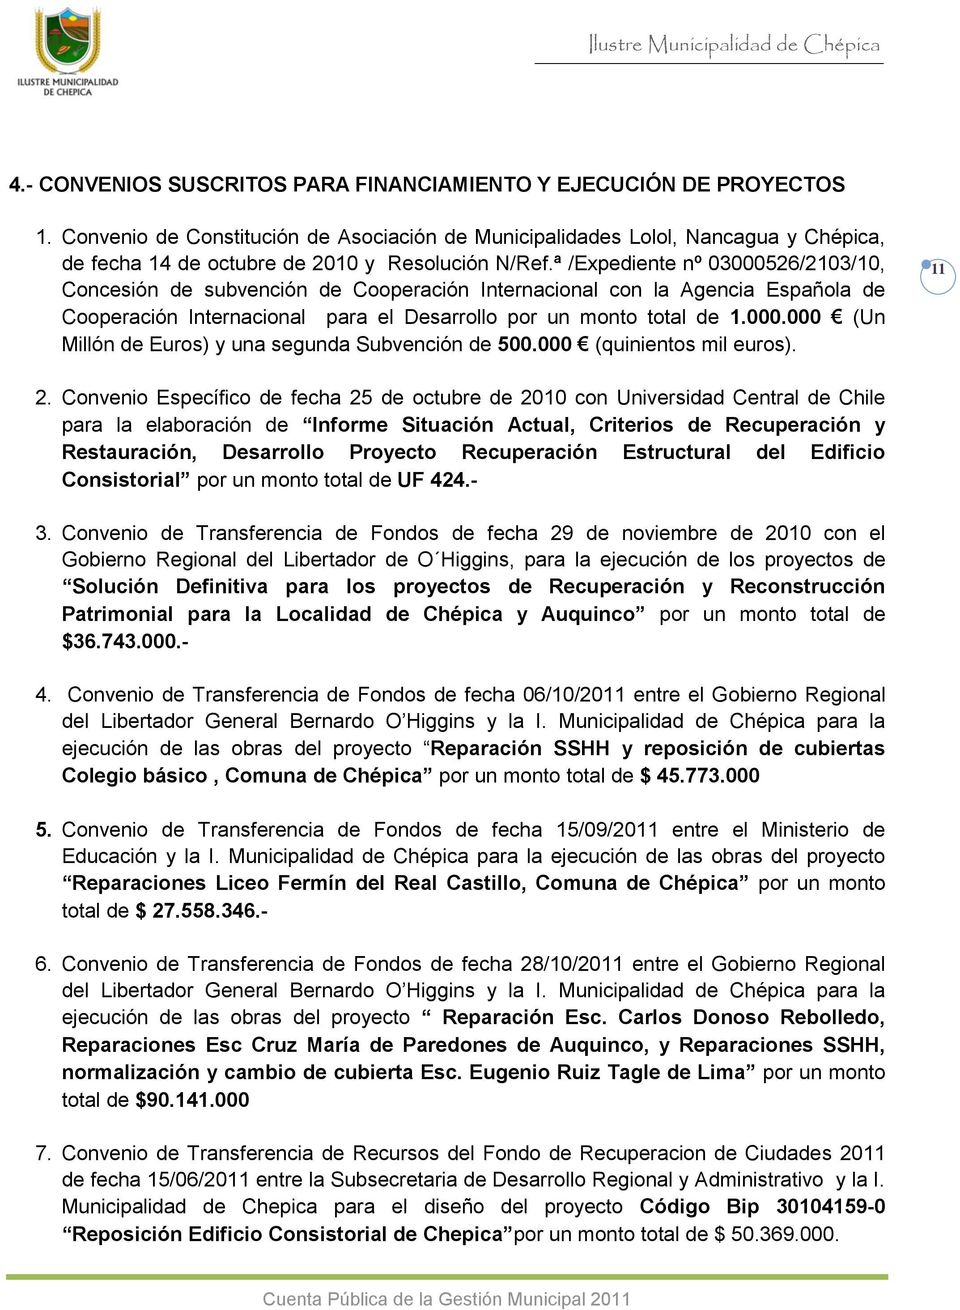 ª /Expediente nº 3526/213/1, Concesión de subvención de Cooperación Internacional con la Agencia Española de Cooperación Internacional para el Desarrollo por un monto total de 1.